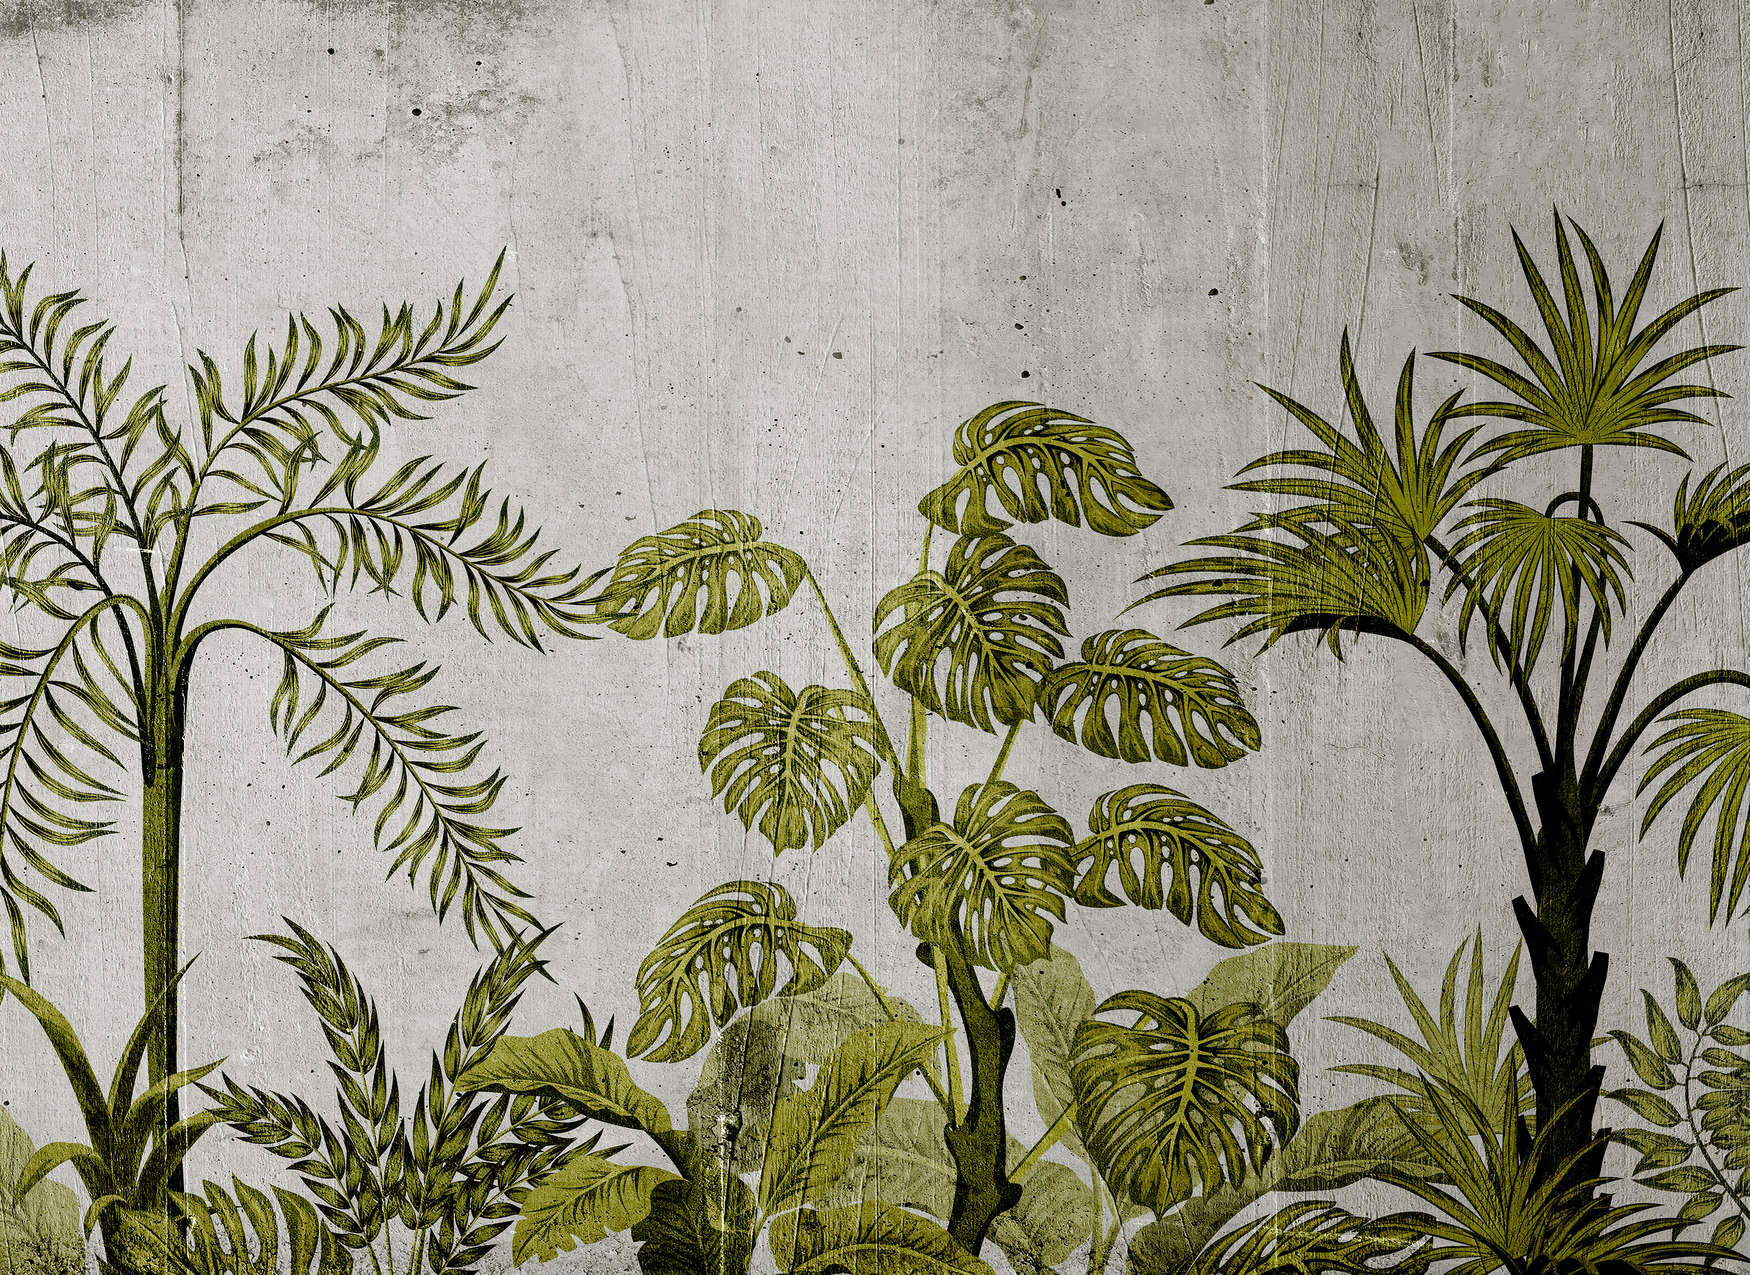             Digital behang met jungle-motief op betonnen achtergrond - groen, grijs
        